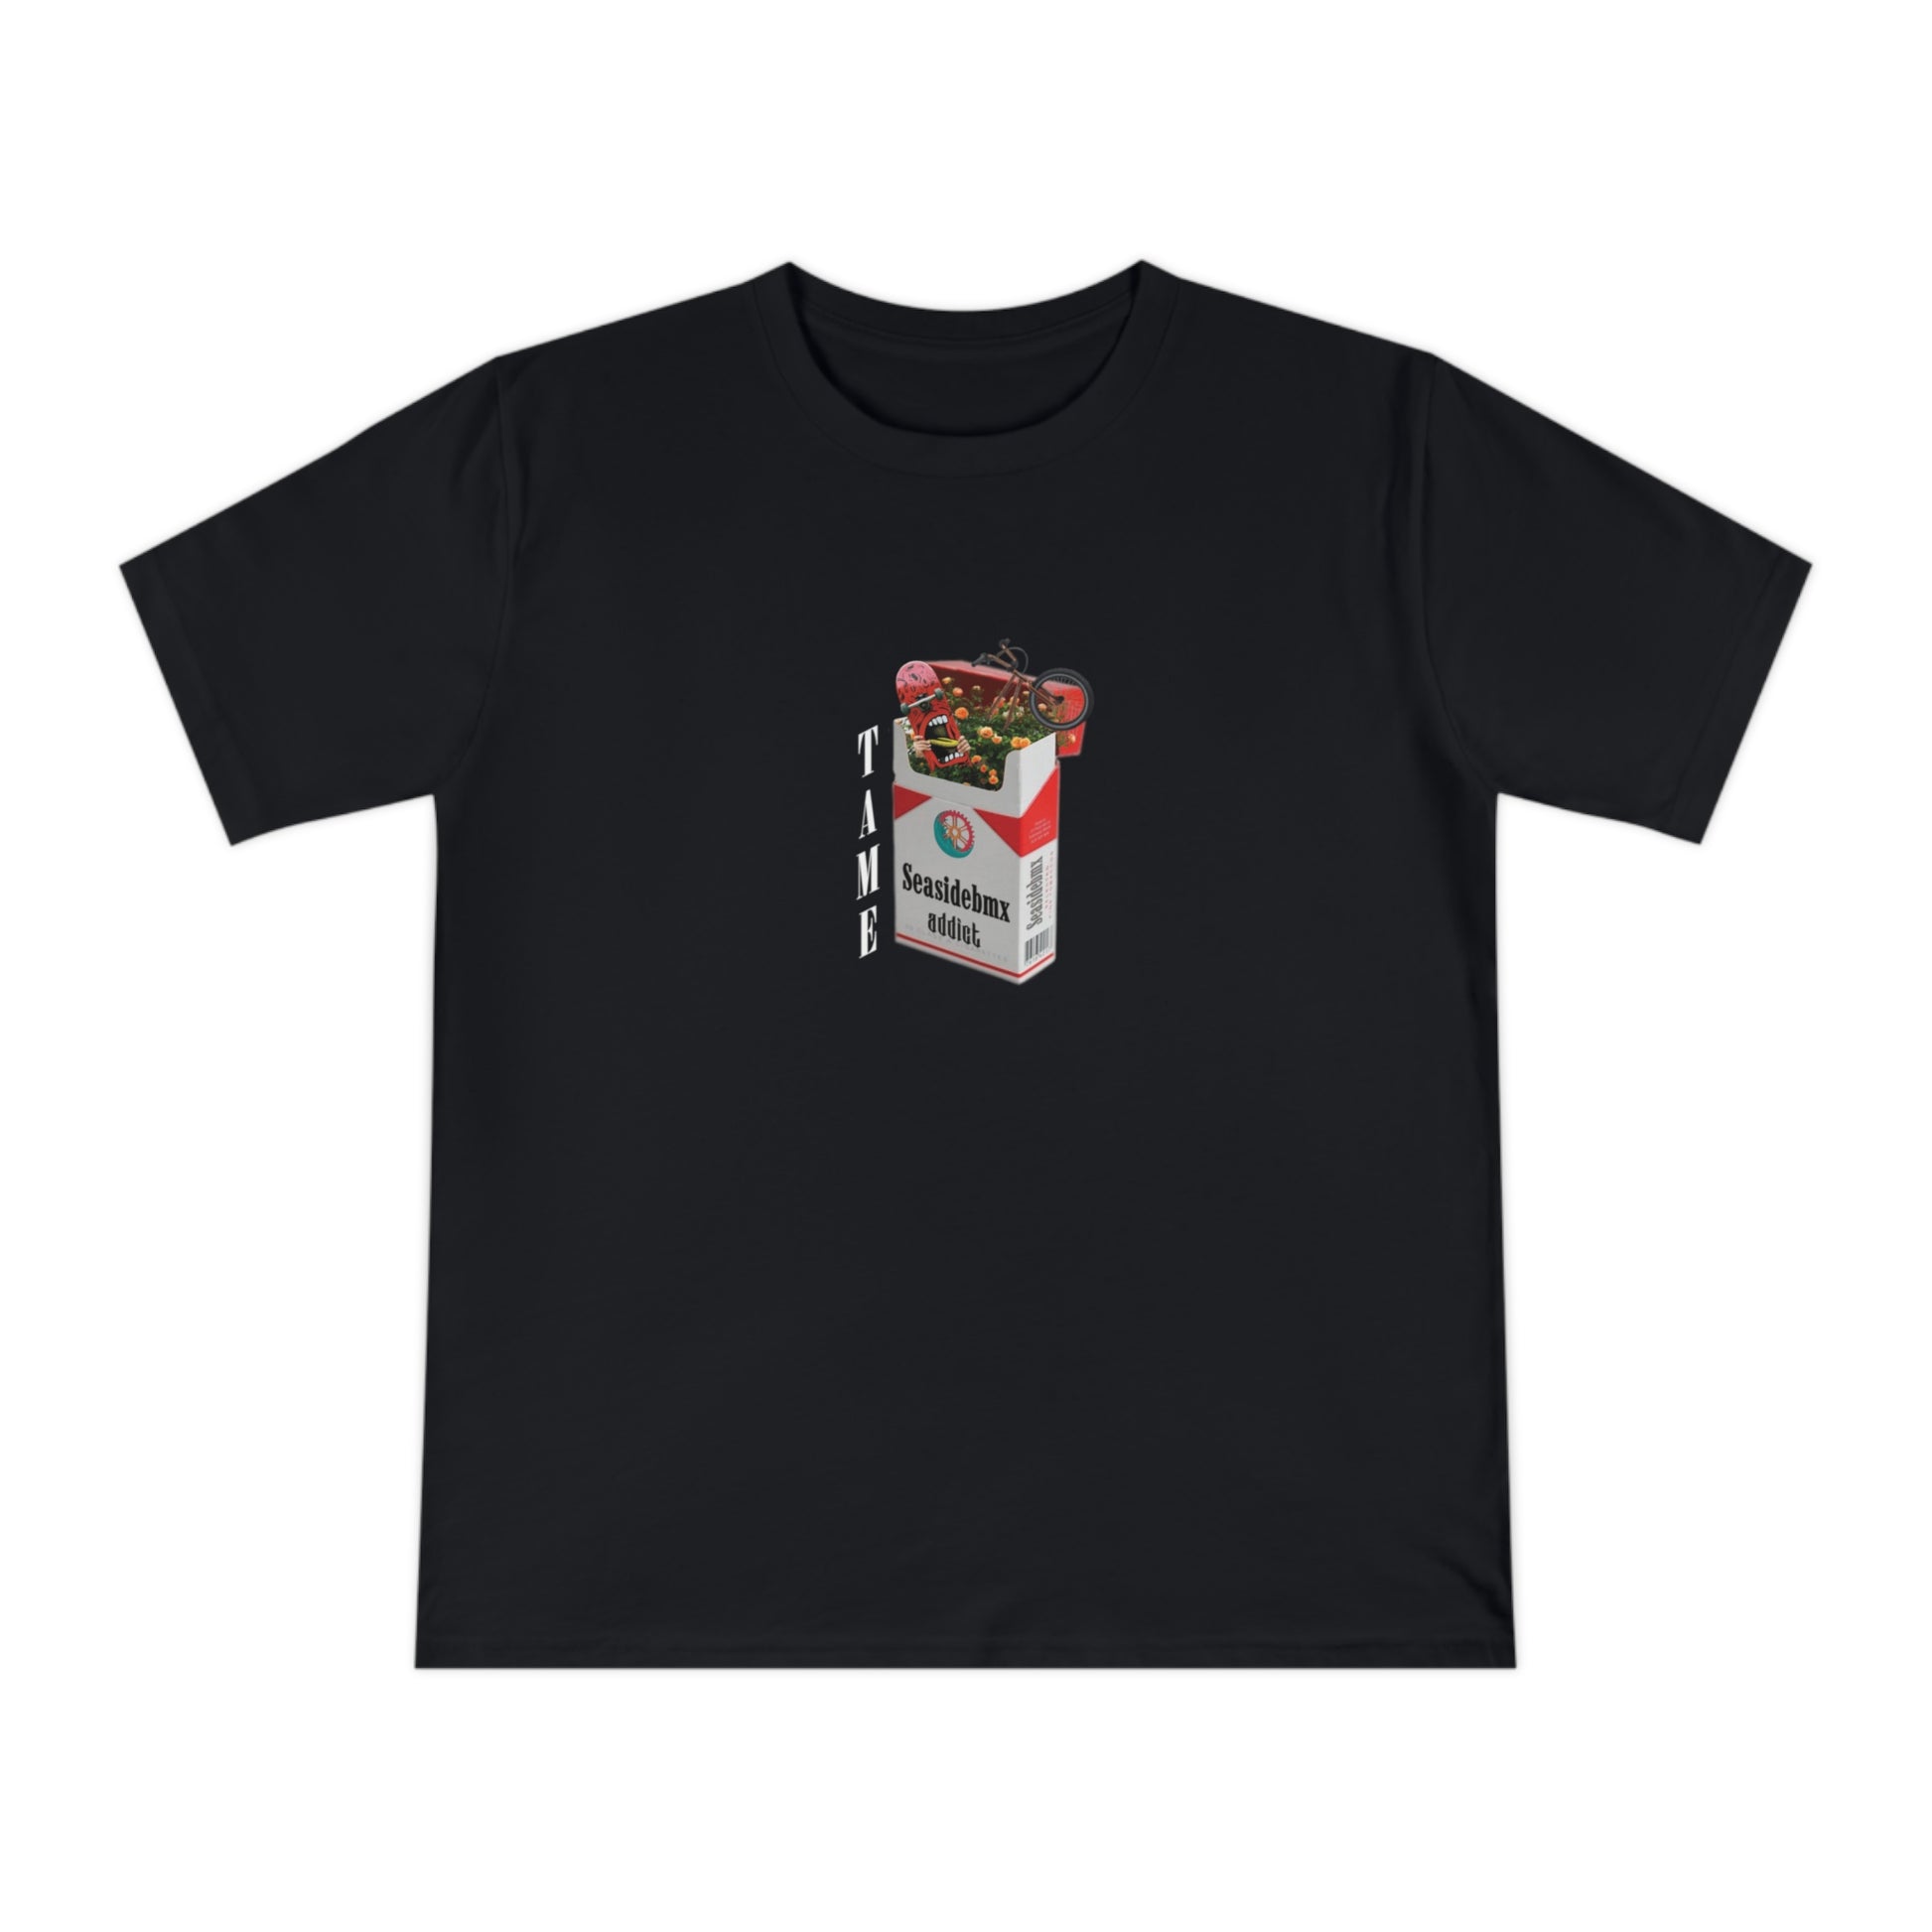 Seasidebmx Unisex T-shirt Cigarette - SeasideBMX - SeasideBMX